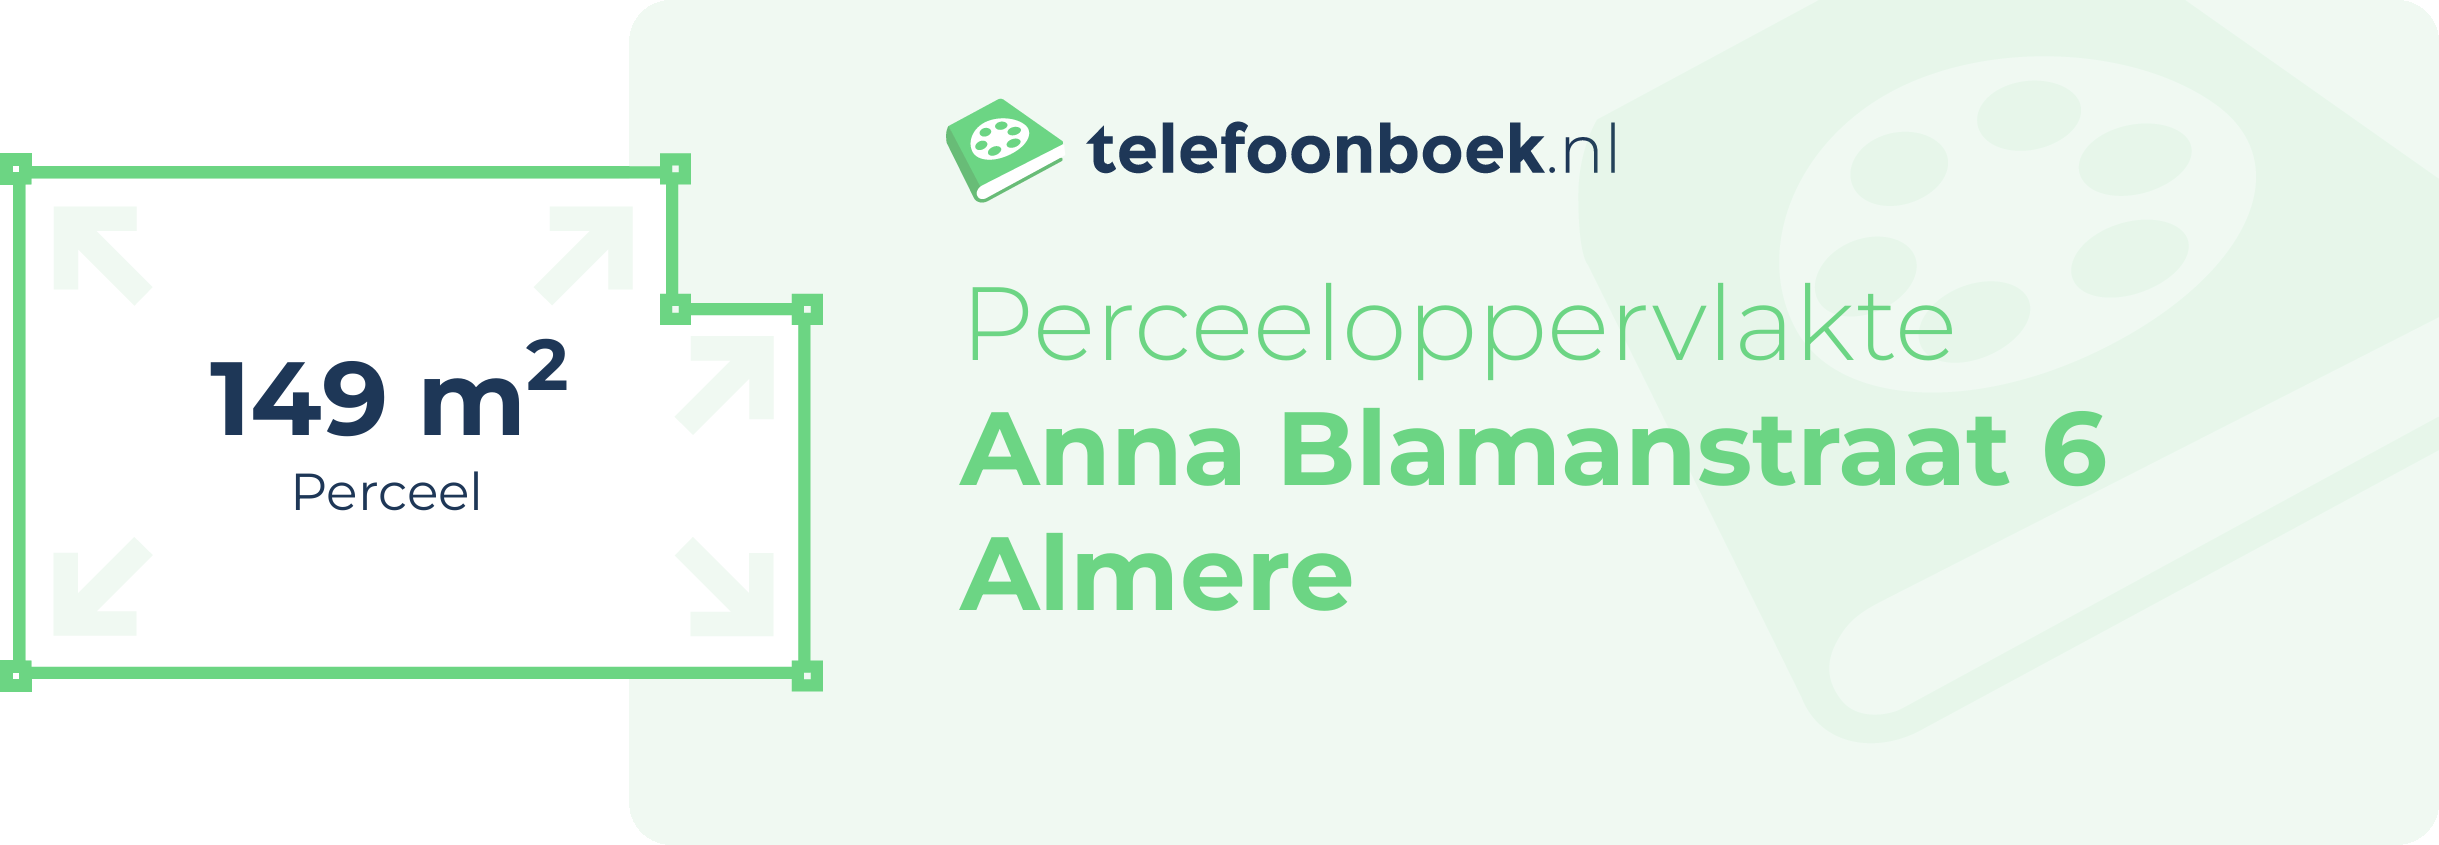 Perceeloppervlakte Anna Blamanstraat 6 Almere